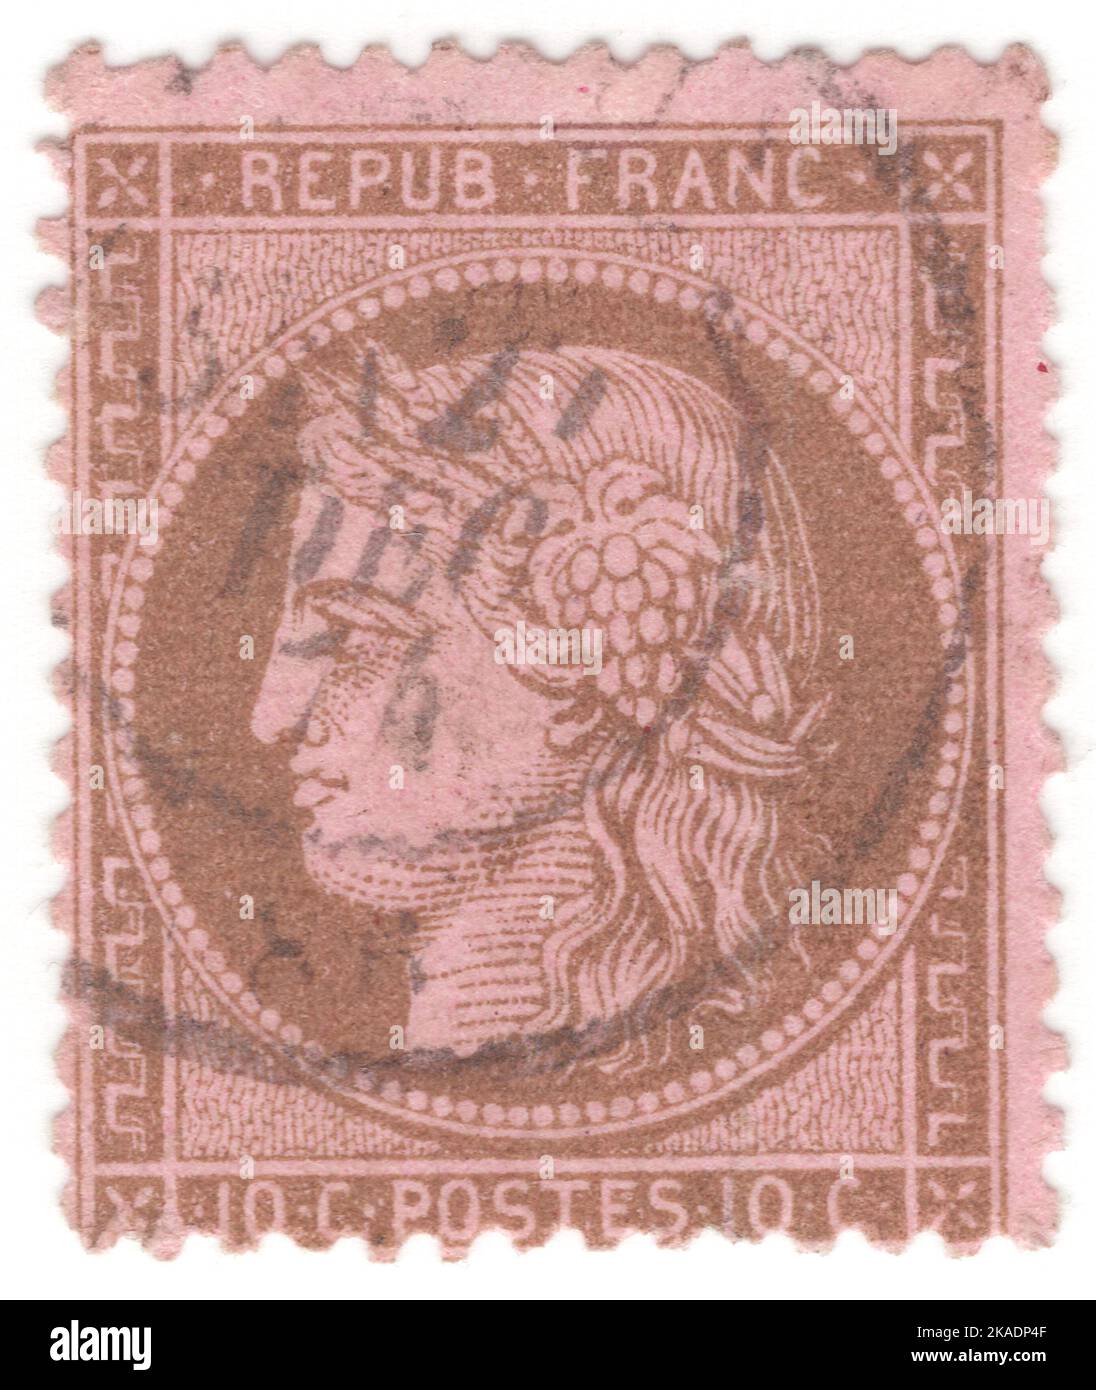 FRANCIA - 1873: Un bister da 10 centesimi su francobollo di rosa raffigurante Ceres — Dea dell'agricoltura, della fertilità, dei cereali, del raccolto, della maternità, la terra, e coltivò raccolti Foto Stock